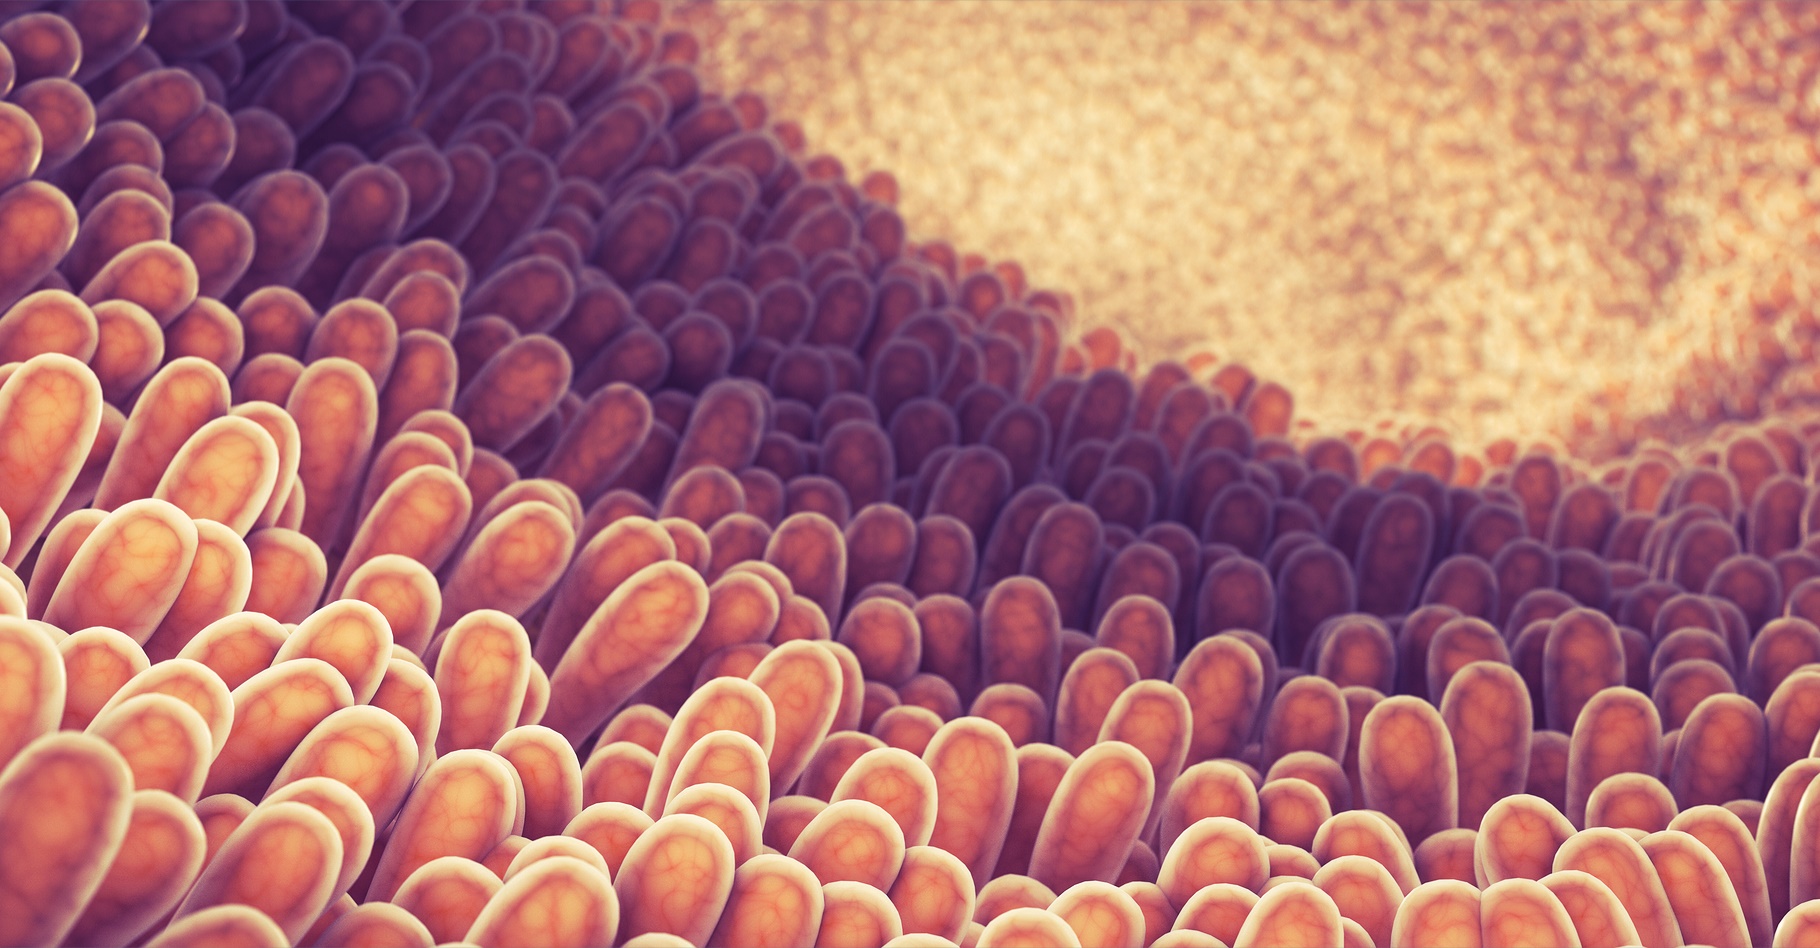 Lorsque la production de mucus est altérée au sein du côlon, cela se traduit par une plus grande inflammation. © nobeatssofierce, Shutterstock